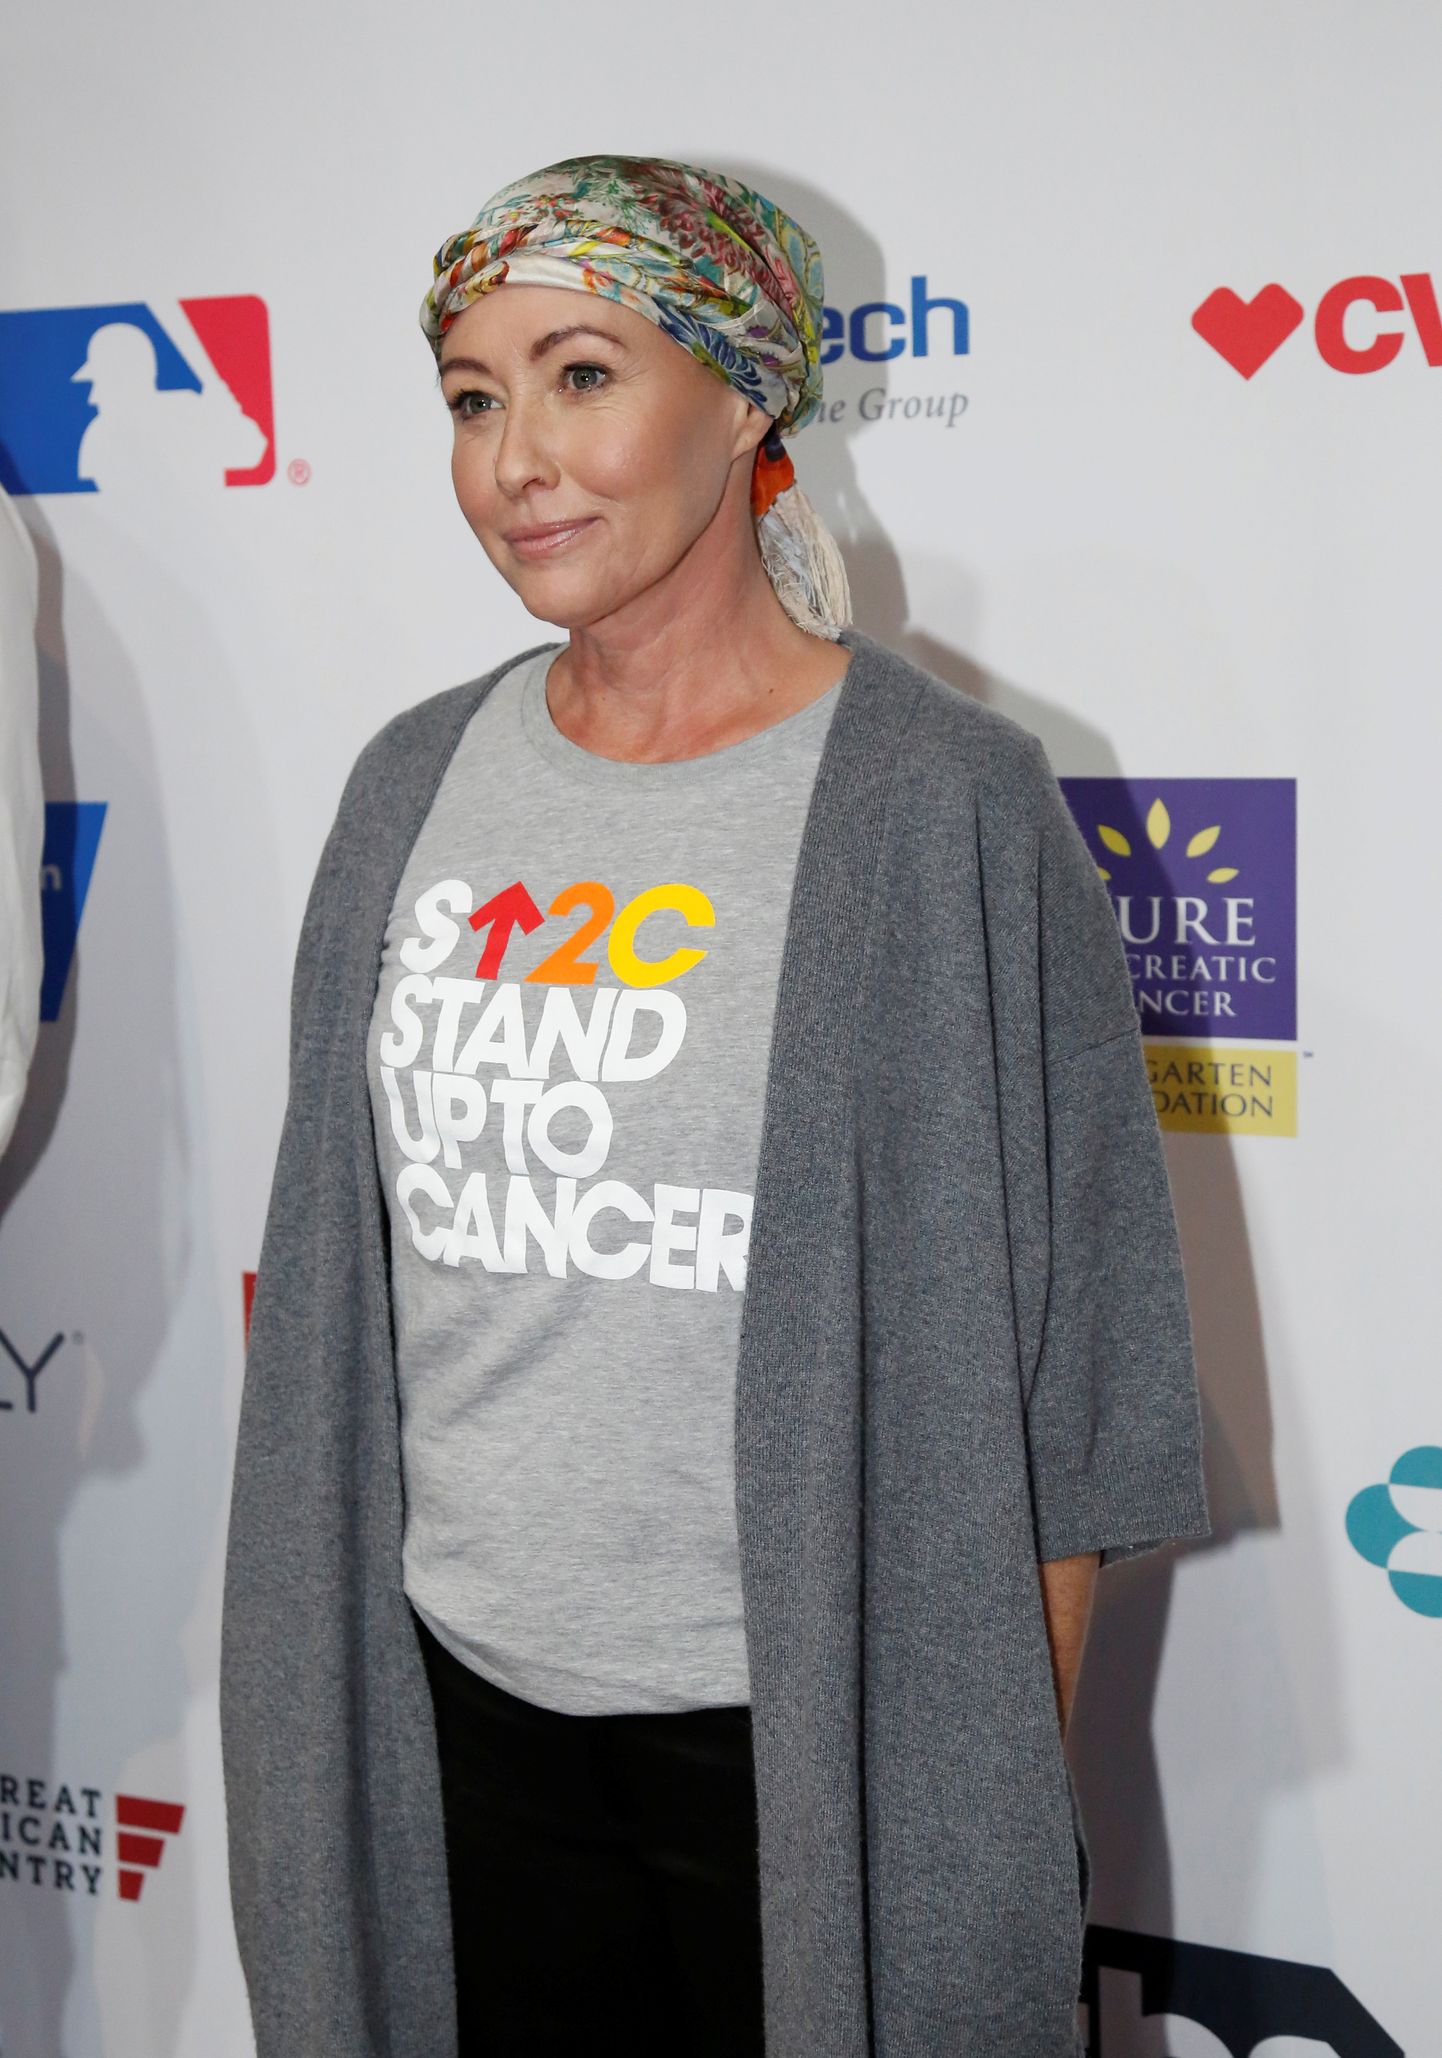 Näitleja Shannen Doherty avaldas 2020. aasta alguses, et tal on viimase staadiumi rinnavähk. Pildil on Doherty 2016. aastal, aasta pärast oma esimest rinnavähi diagnoosi.